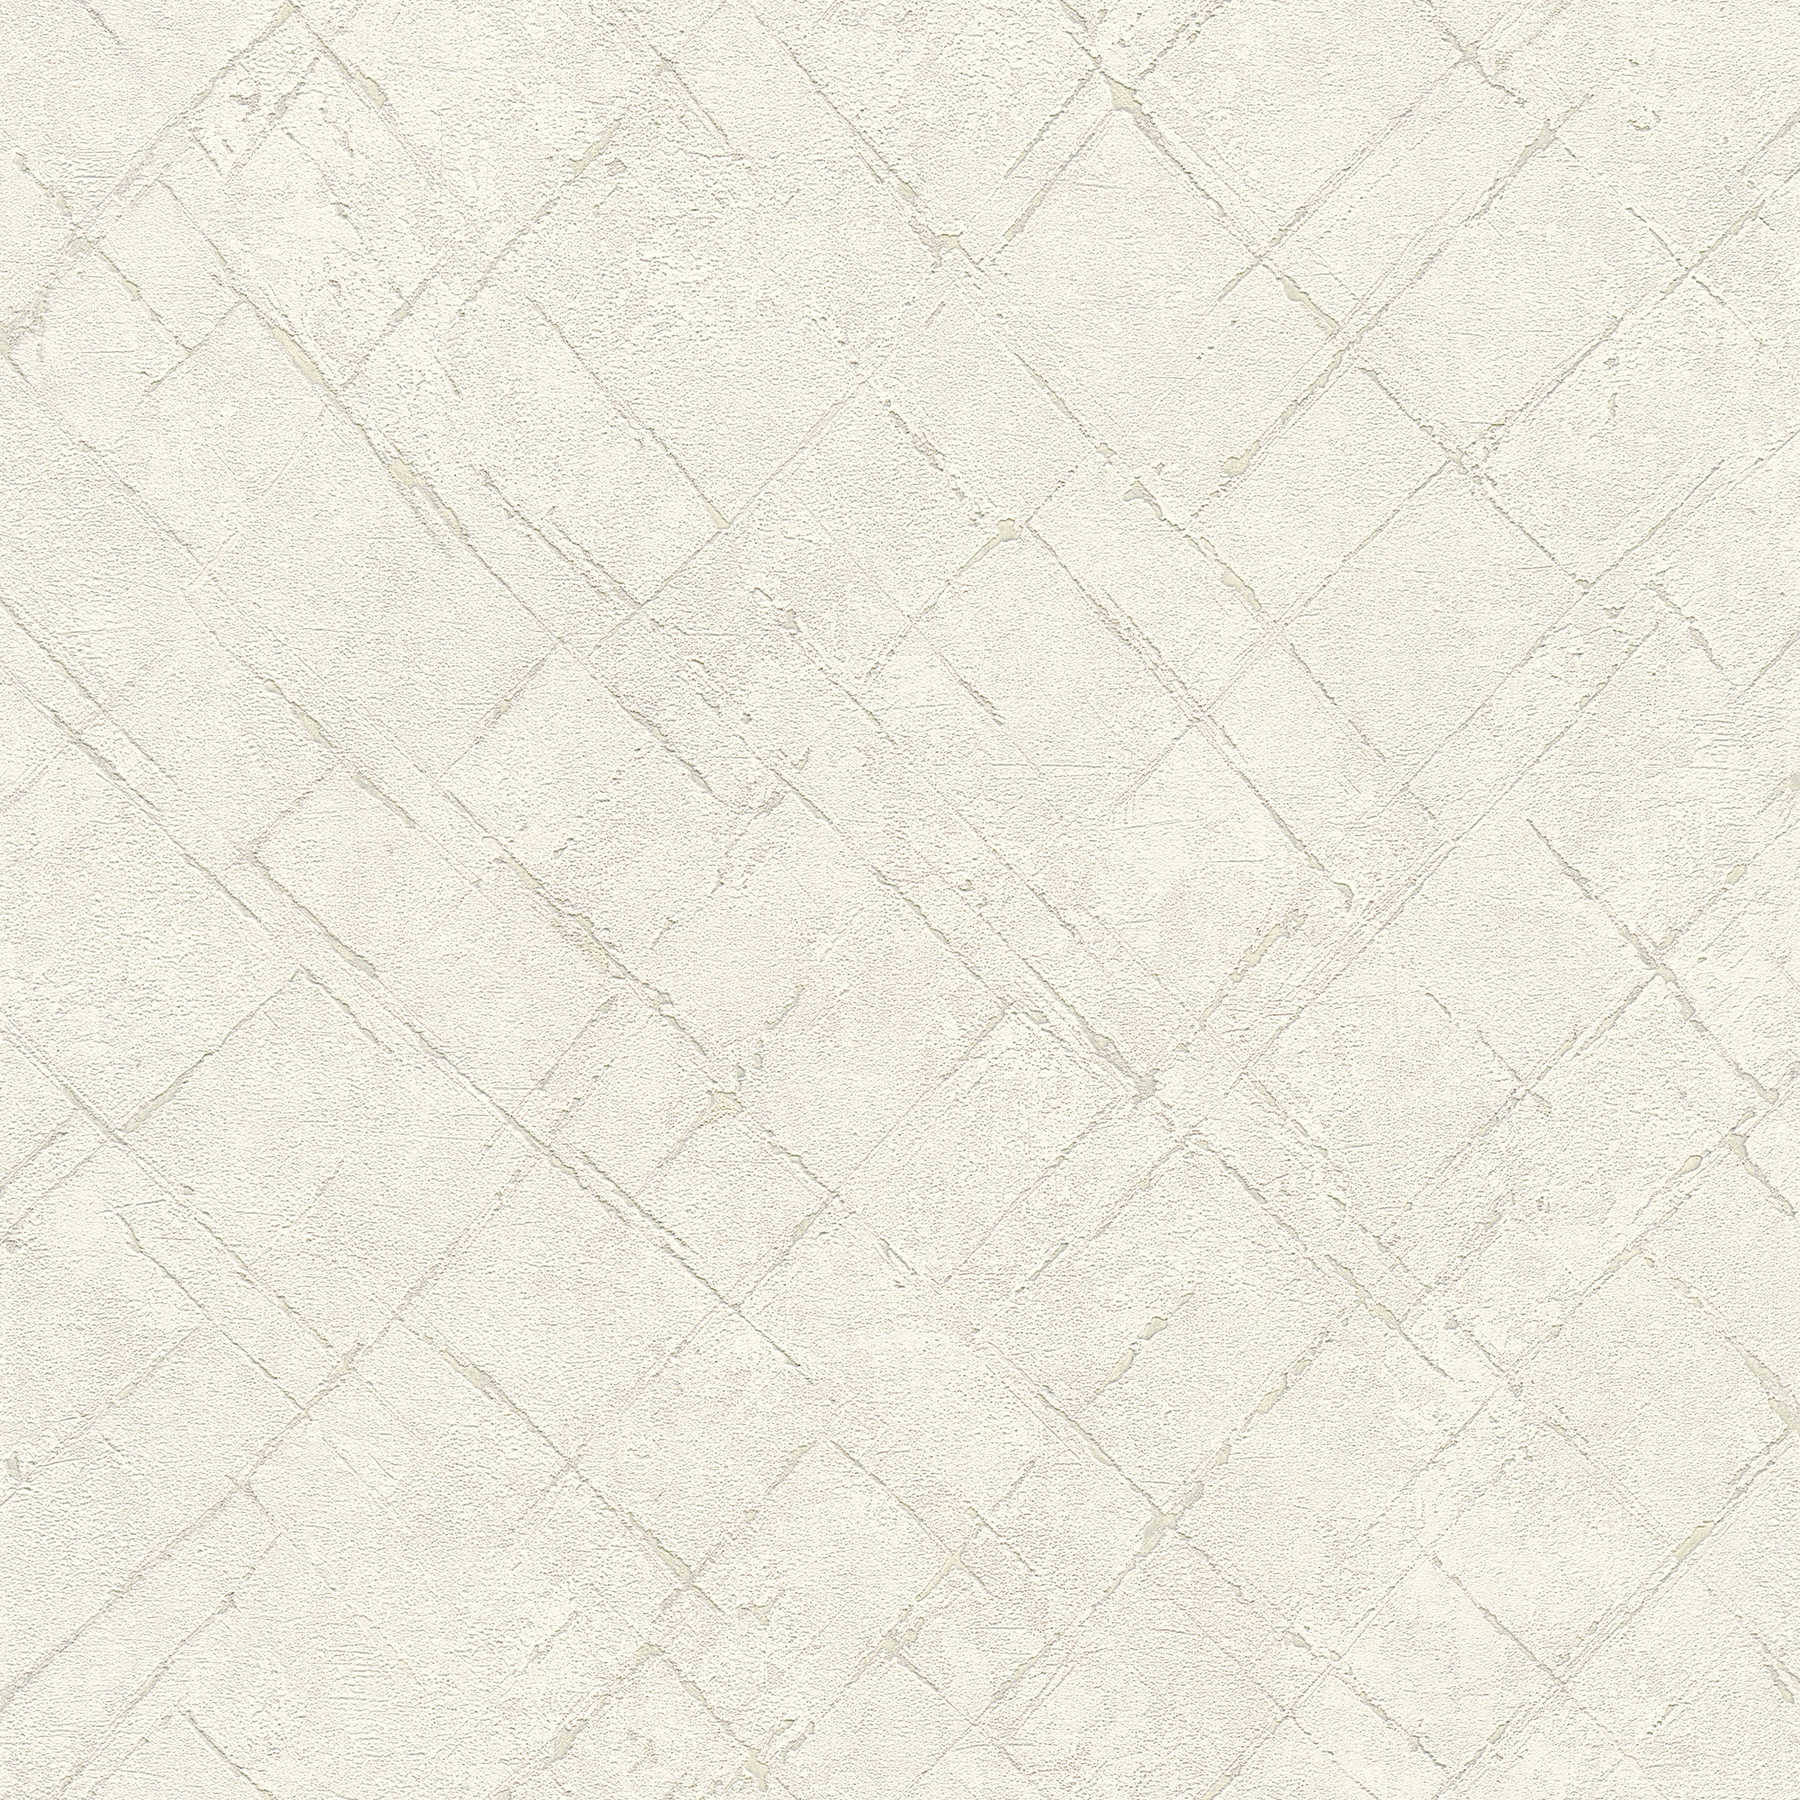 Vliesbehang gipslook in gebruikte look - wit, grijs
